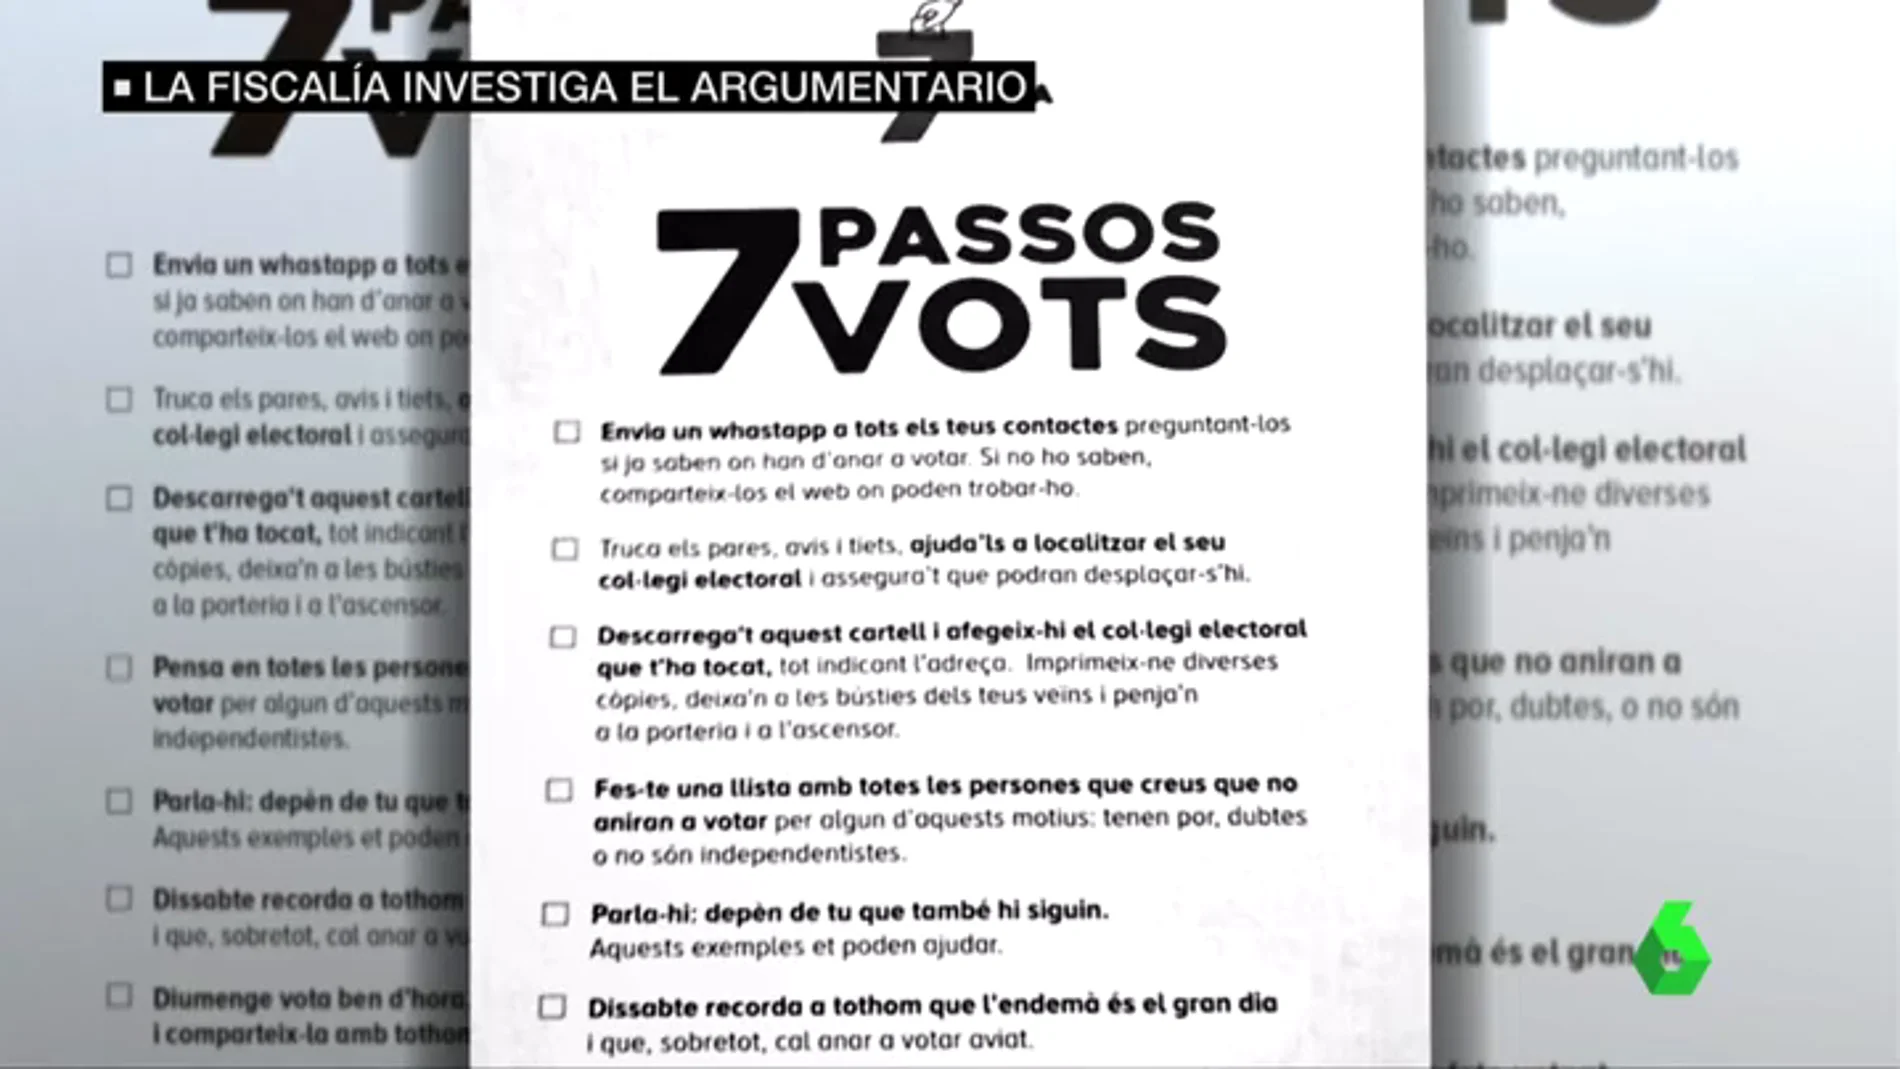 Polémica por los panfletos pro referéndum que llaman a hacer una lista con las personas que no voten el 1-O